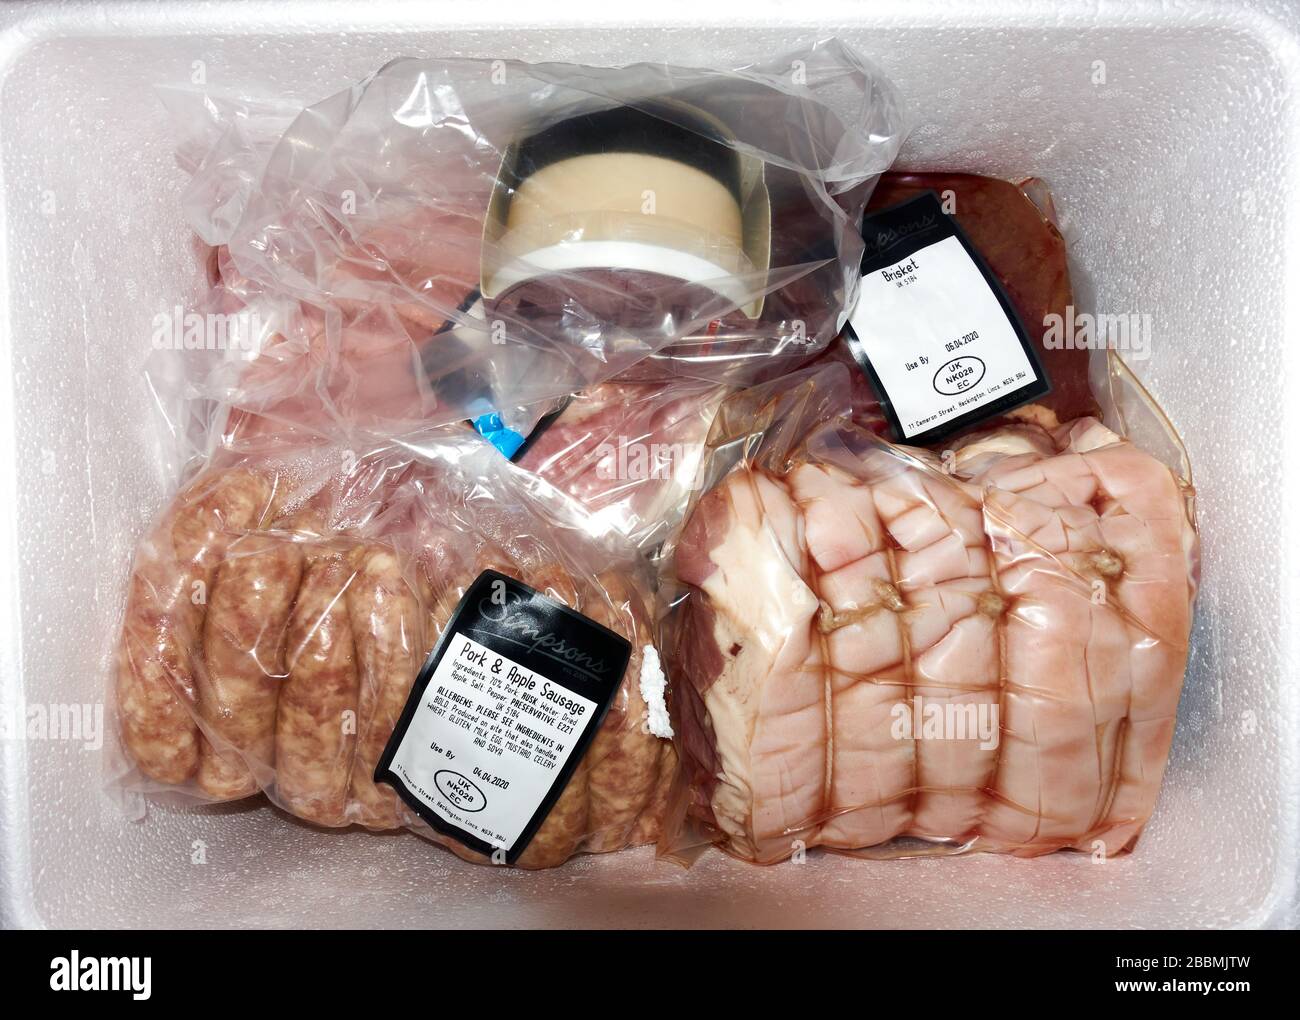 Carniceros entrega de carne fresca a domicilio en una caja fría de poliestireno de poliestireno de espuma de poliestireno aislada de Simpsons de Heckington Lincolnshire Foto de stock